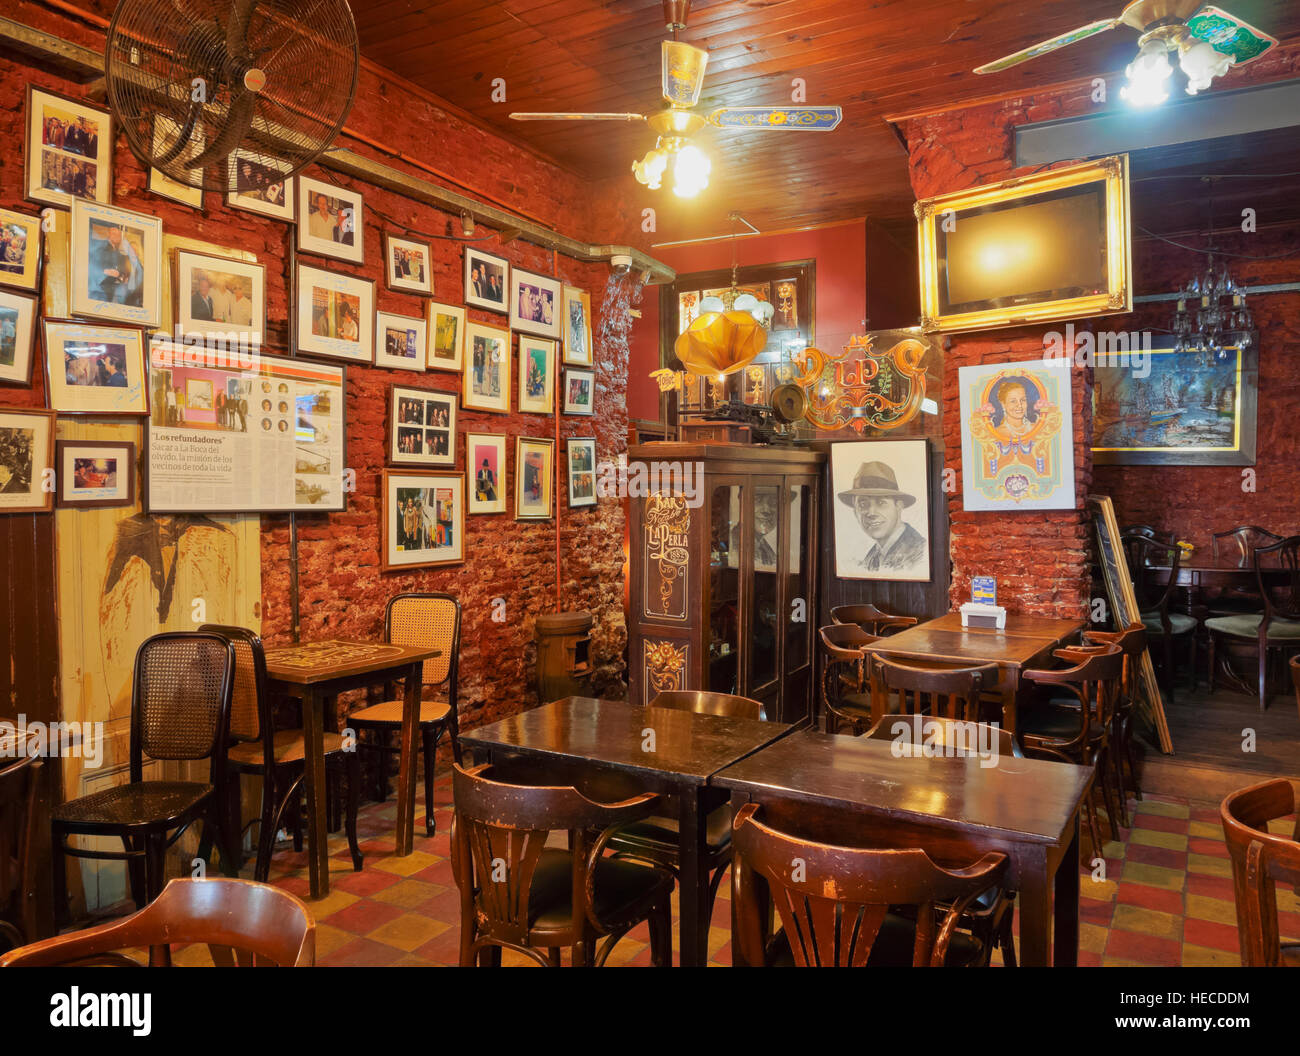 Argentina, Buenos Aires, La Boca, vista interna del cafe bar La Perla. Foto Stock